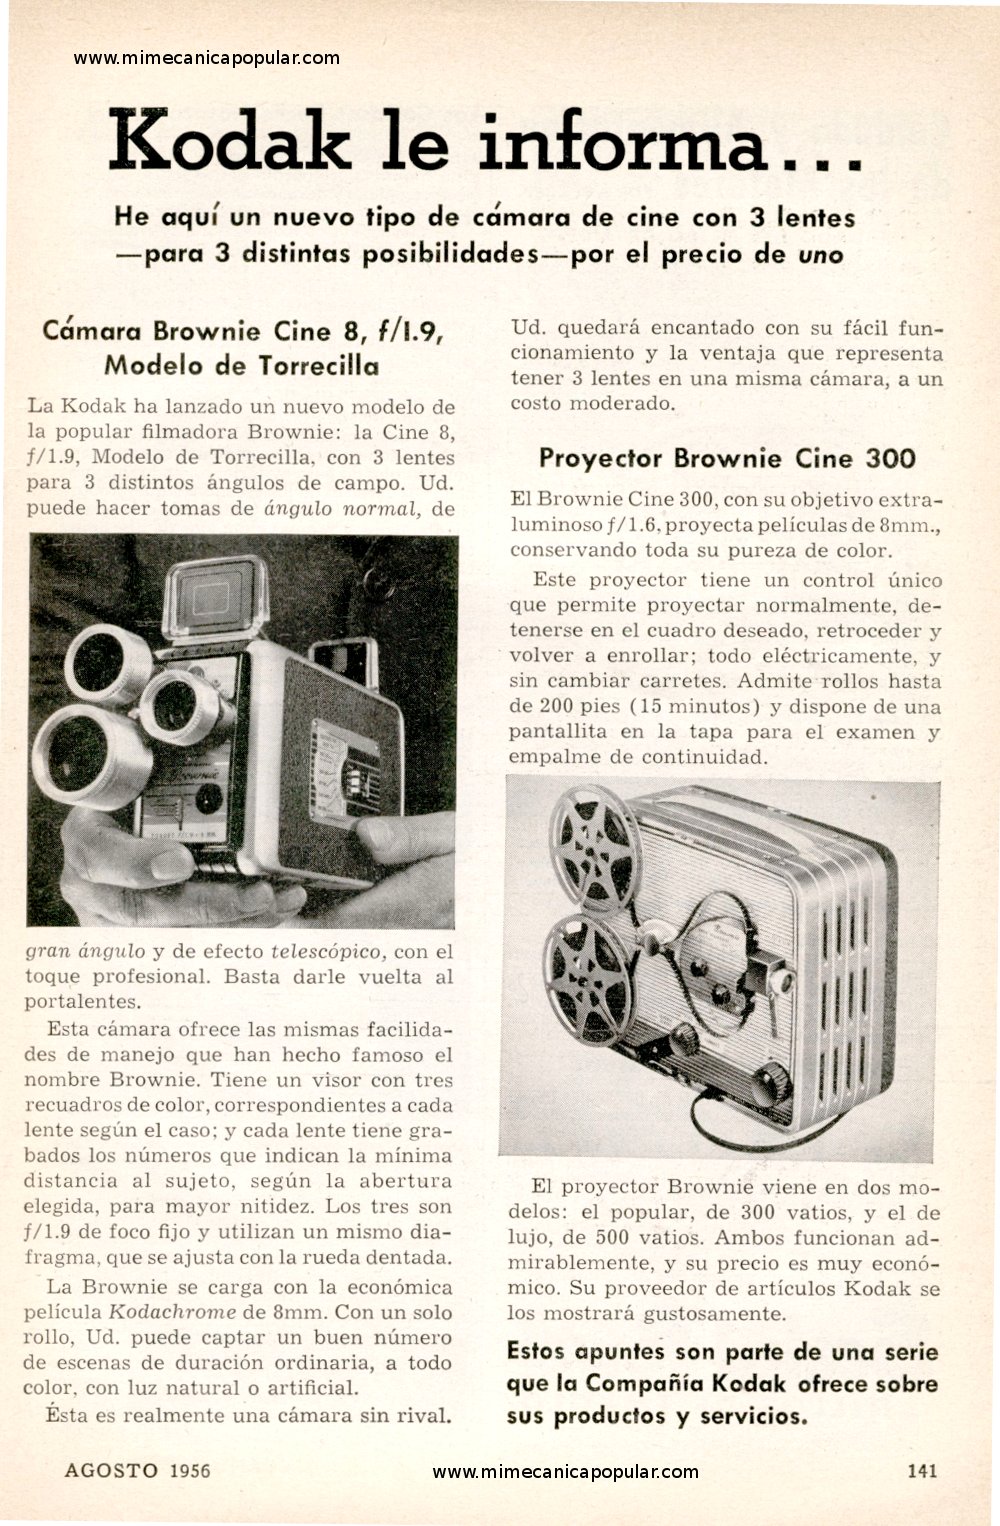 Publicidad - Kodak le informa . . . - Agosto 1956